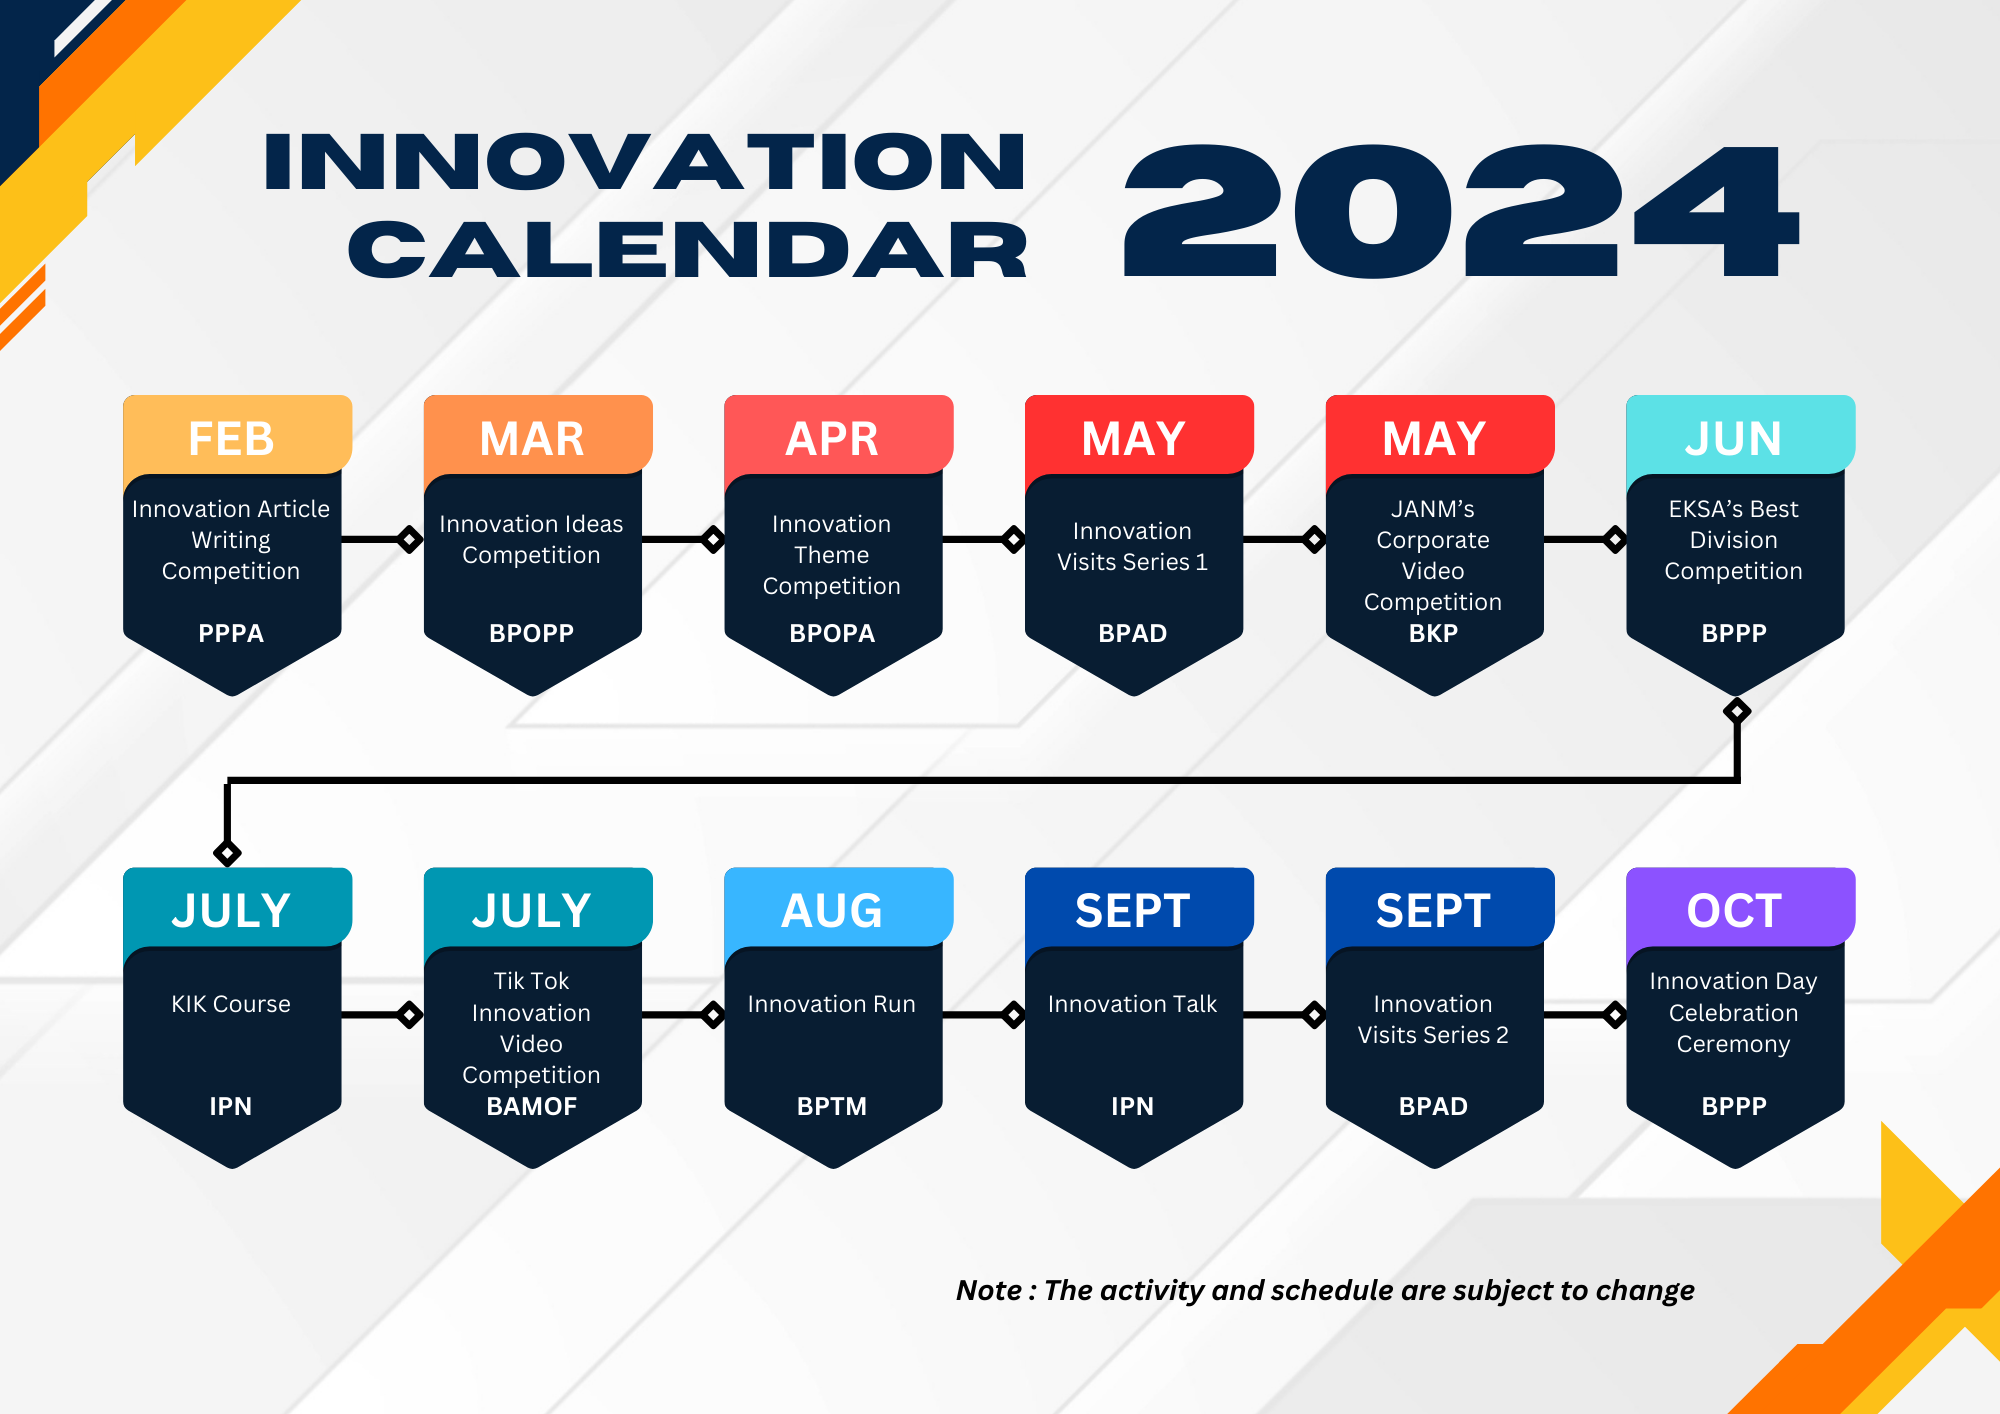 kalendar inovasi 2022